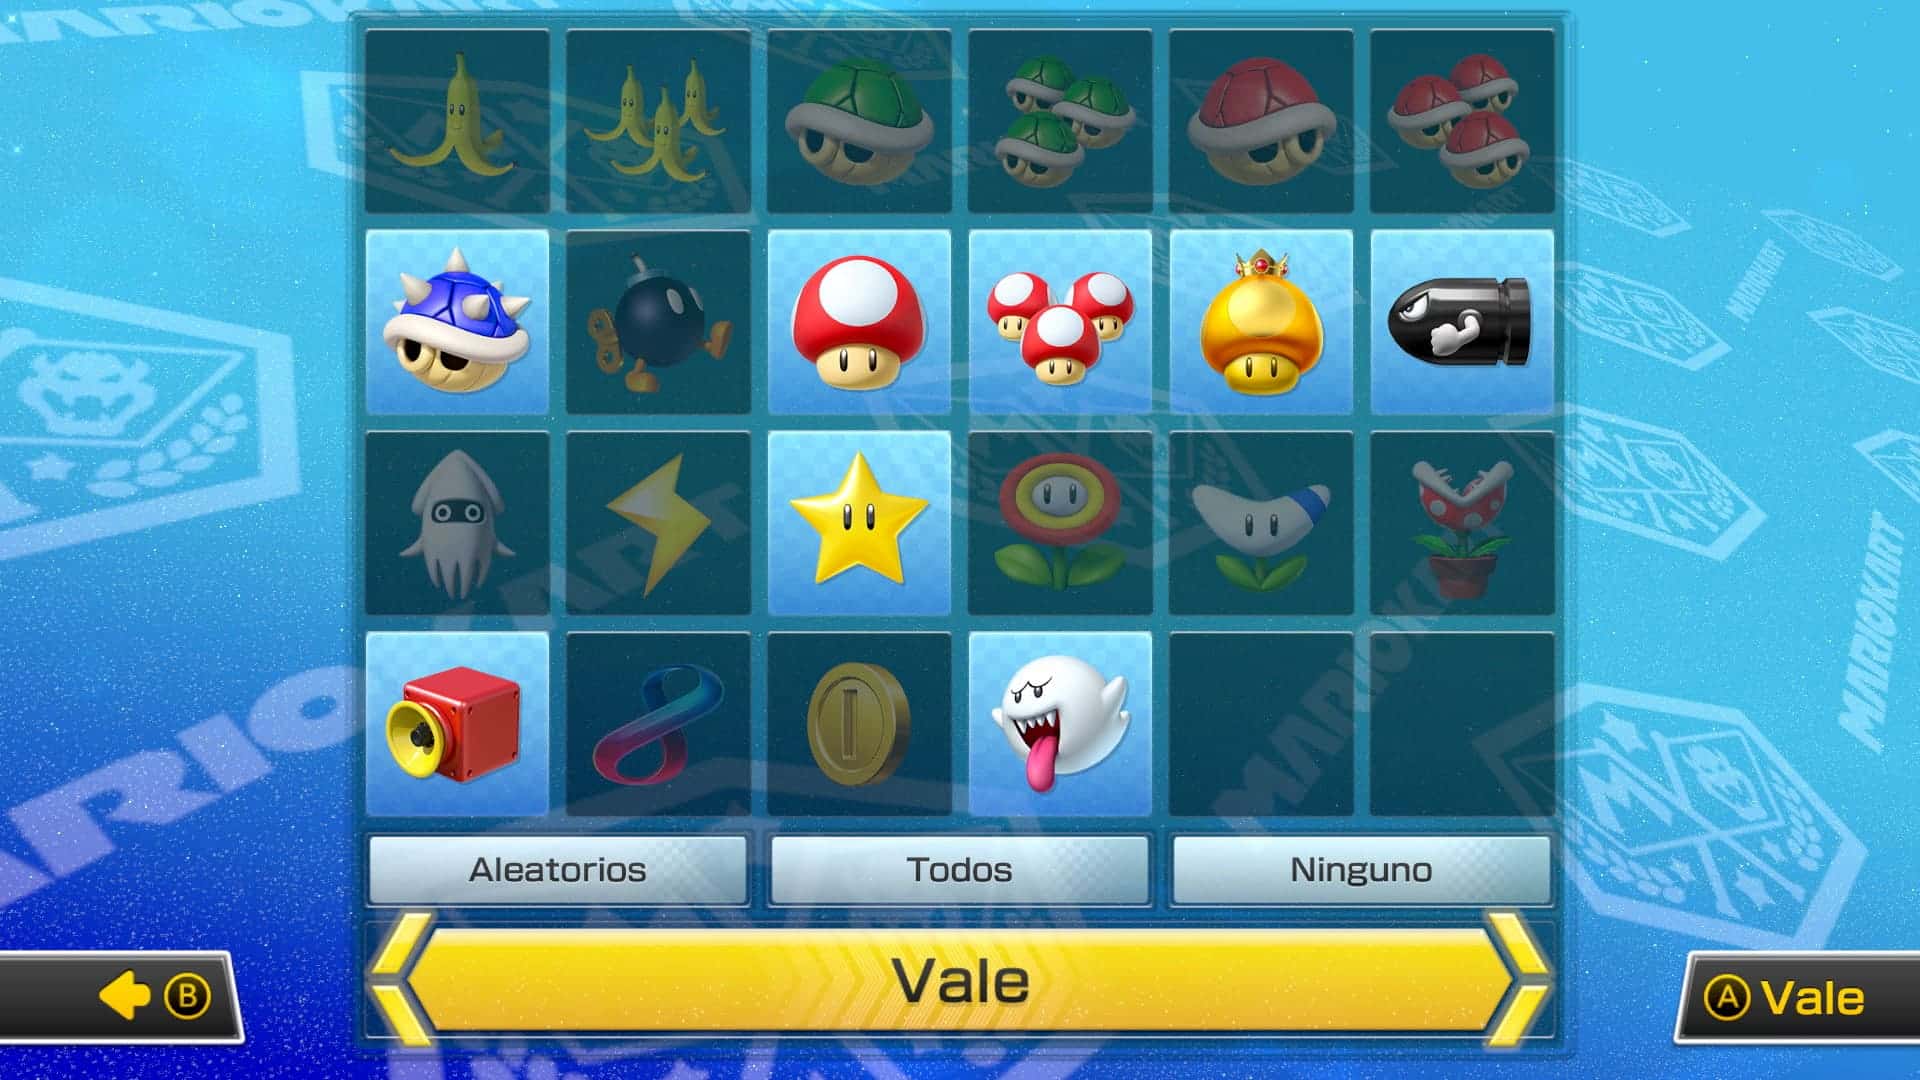 La nueva actualización de Mario Kart 8 Deluxe incluye esta opción de objetos personalizados para todos